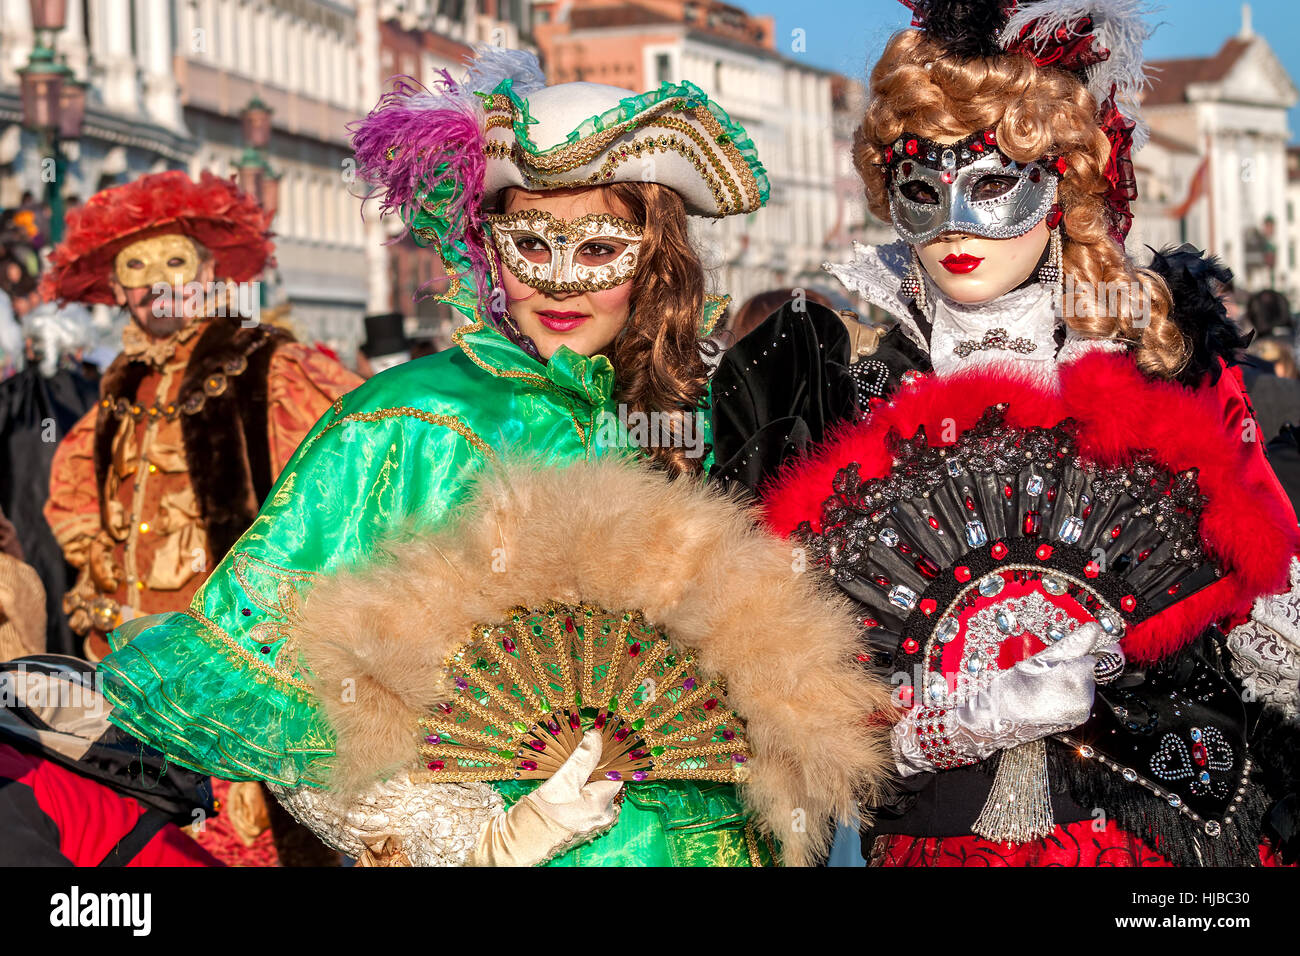 Zwei junge Frauen tragen bunte Kleider und Masken bei traditionellen berühmten Karneval legen jedes Jahr in Venedig. Stockfoto